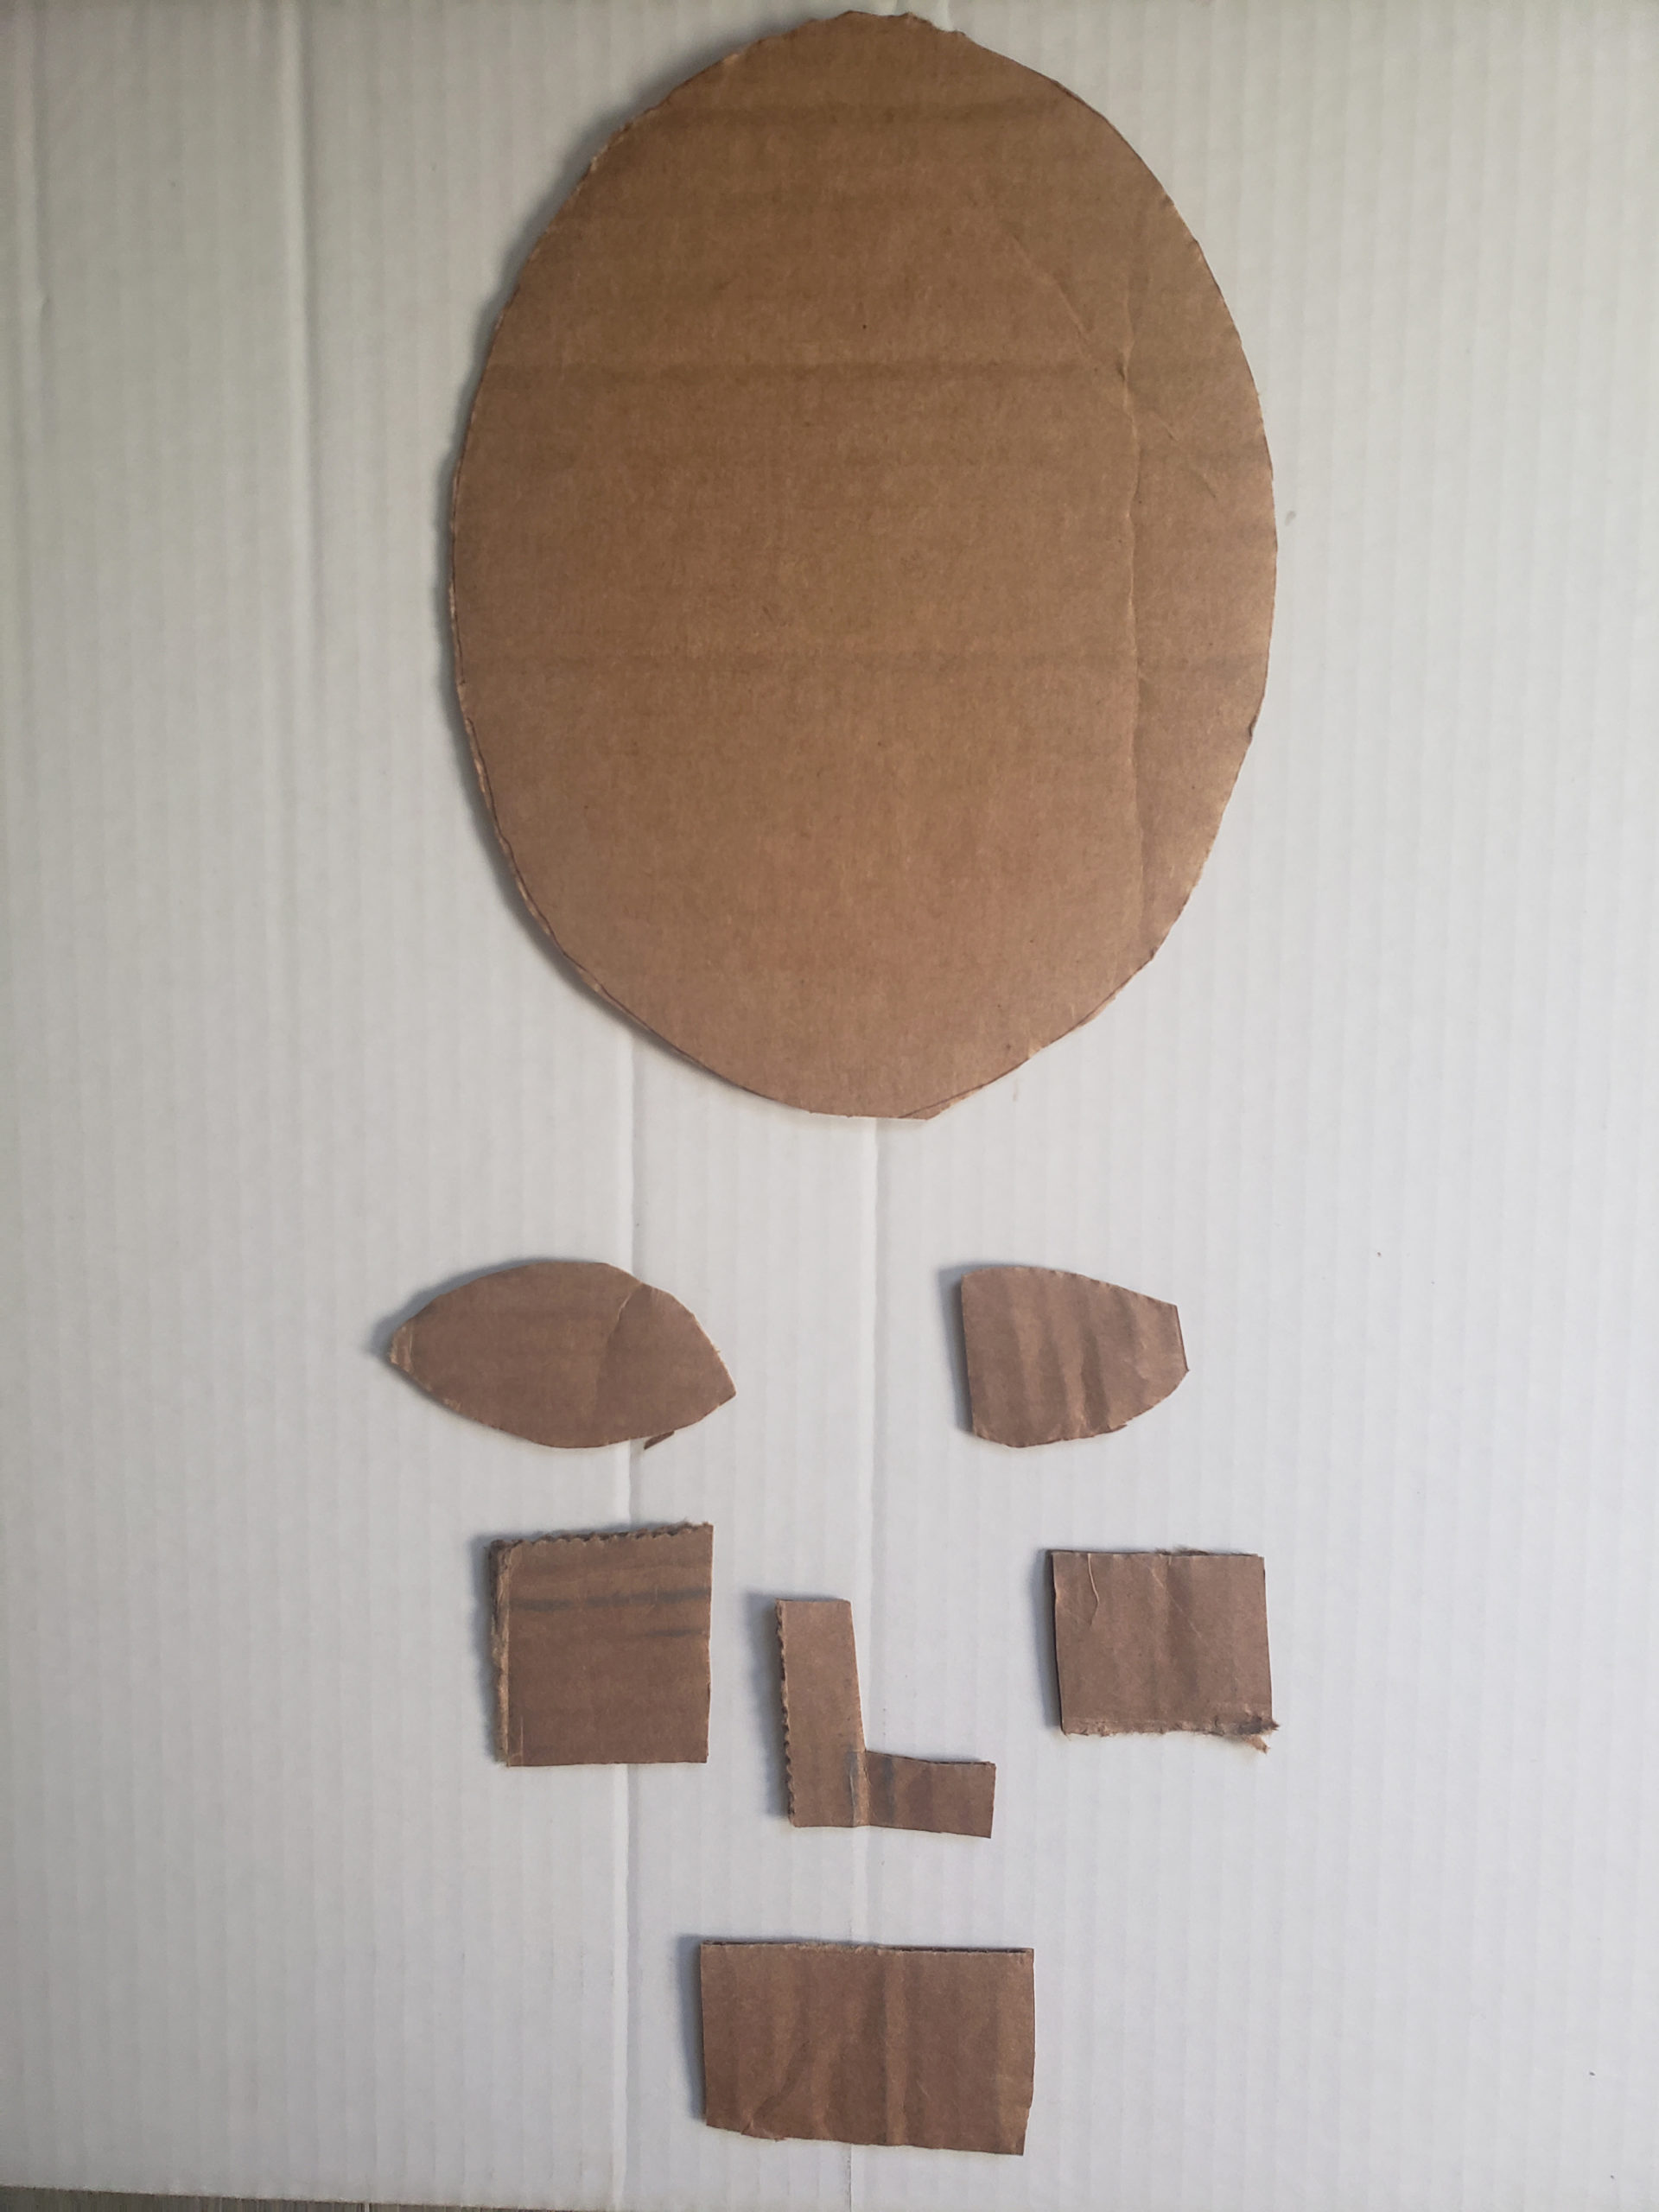 Cardboard art project idea for kids.